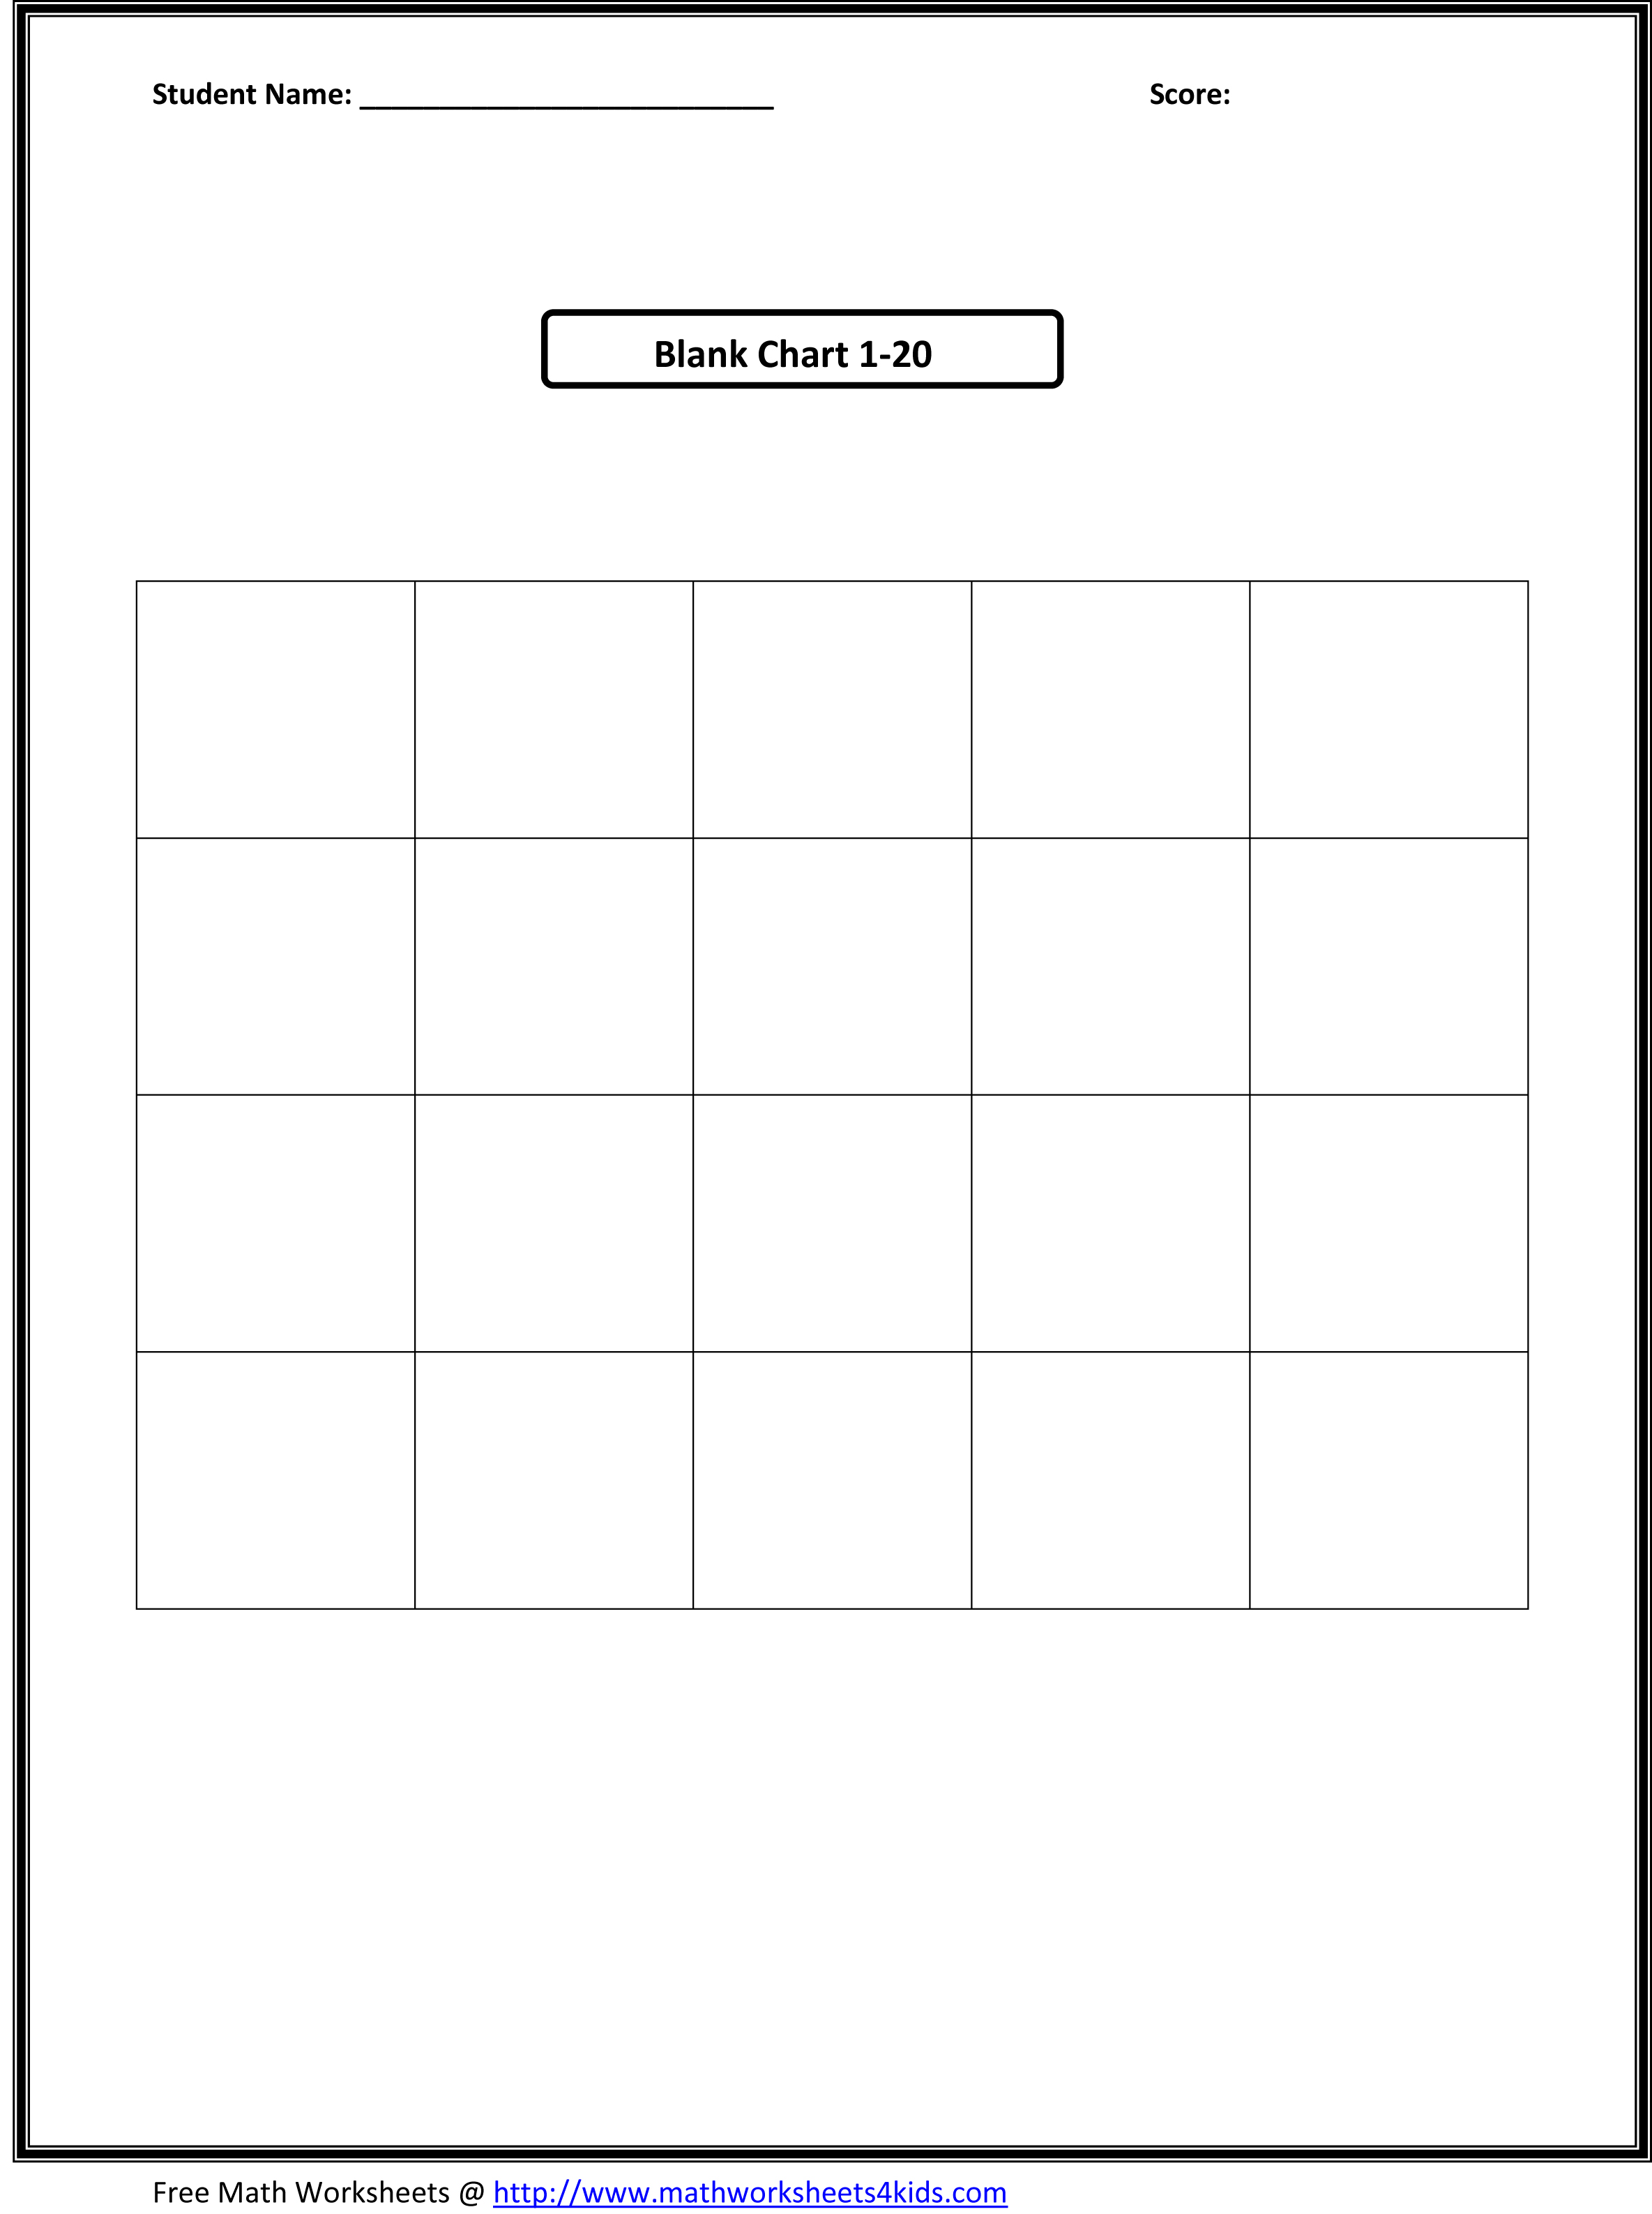 composing-numbers-kindergarten-worksheets-numbersworksheet